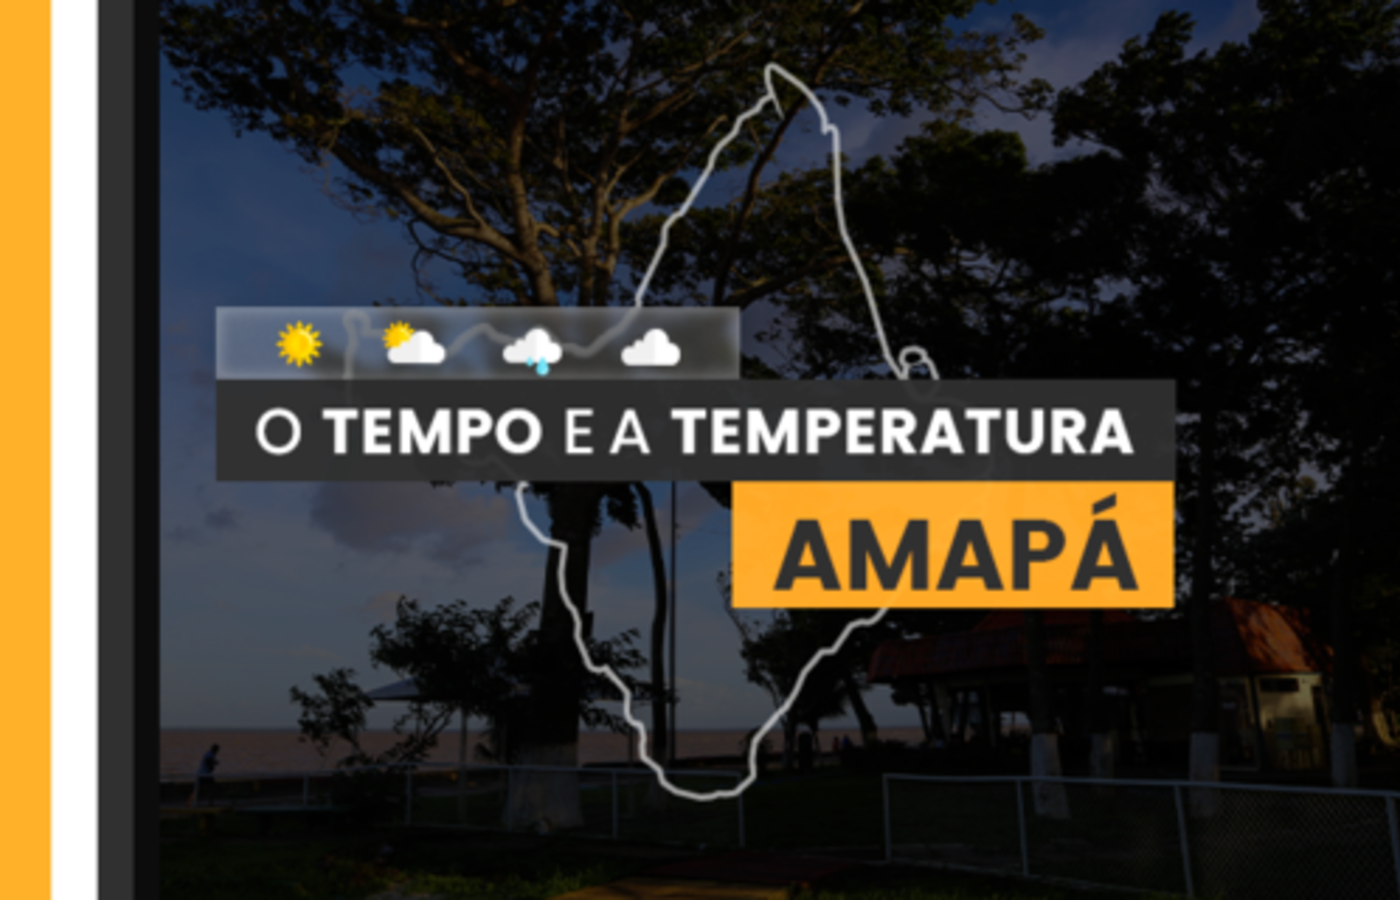 PREVISÃO DO TEMPO: sexta-feira (12) chuvosa no Amapá